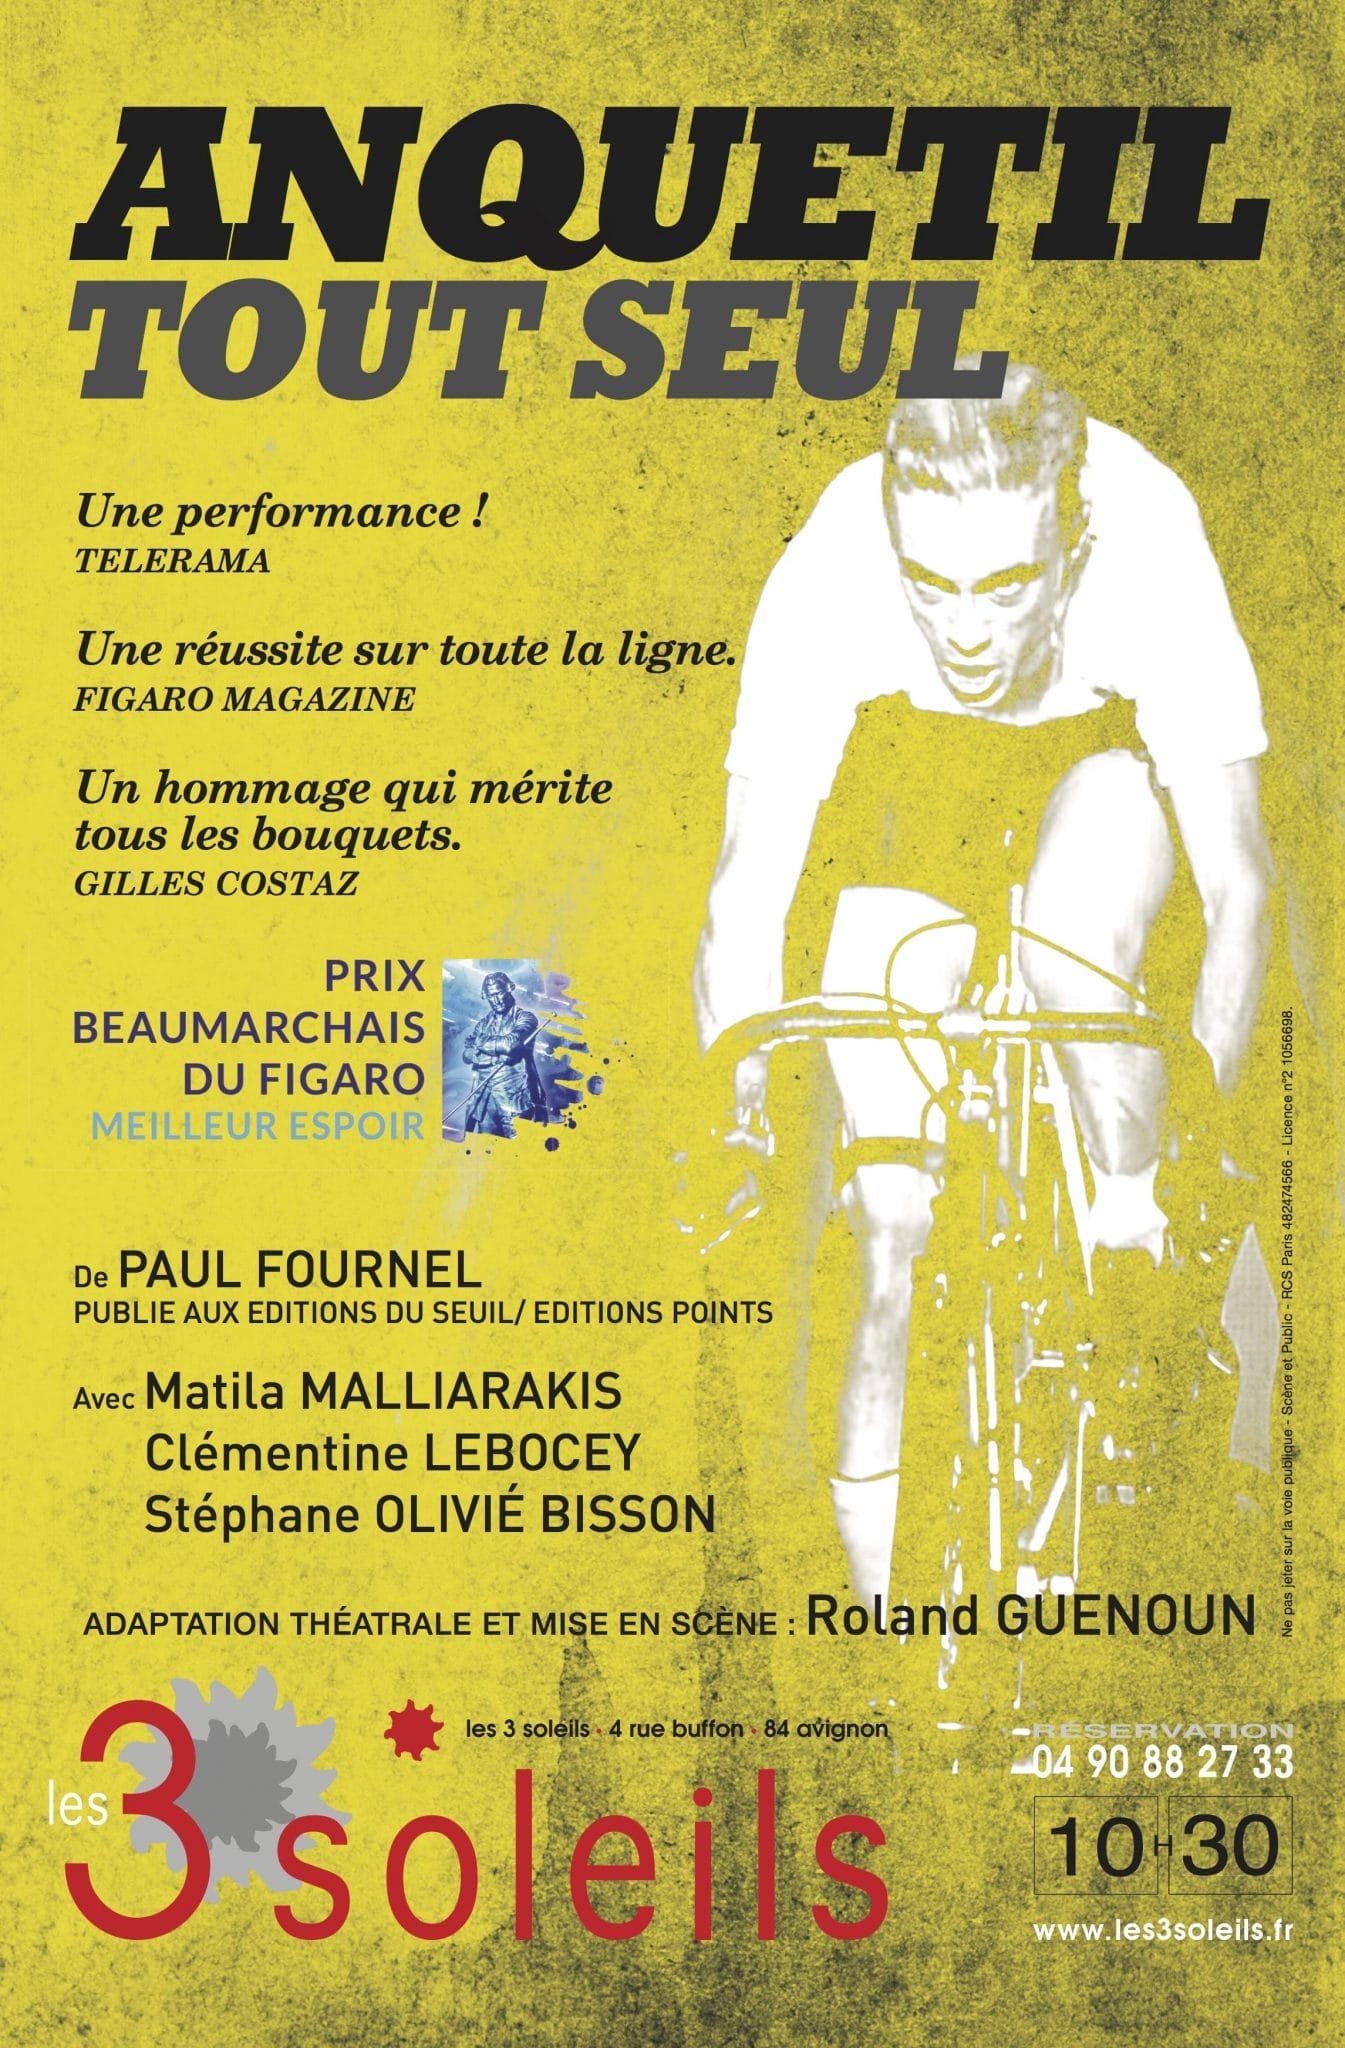 Anquetil tout seul Avignon le Off 2017